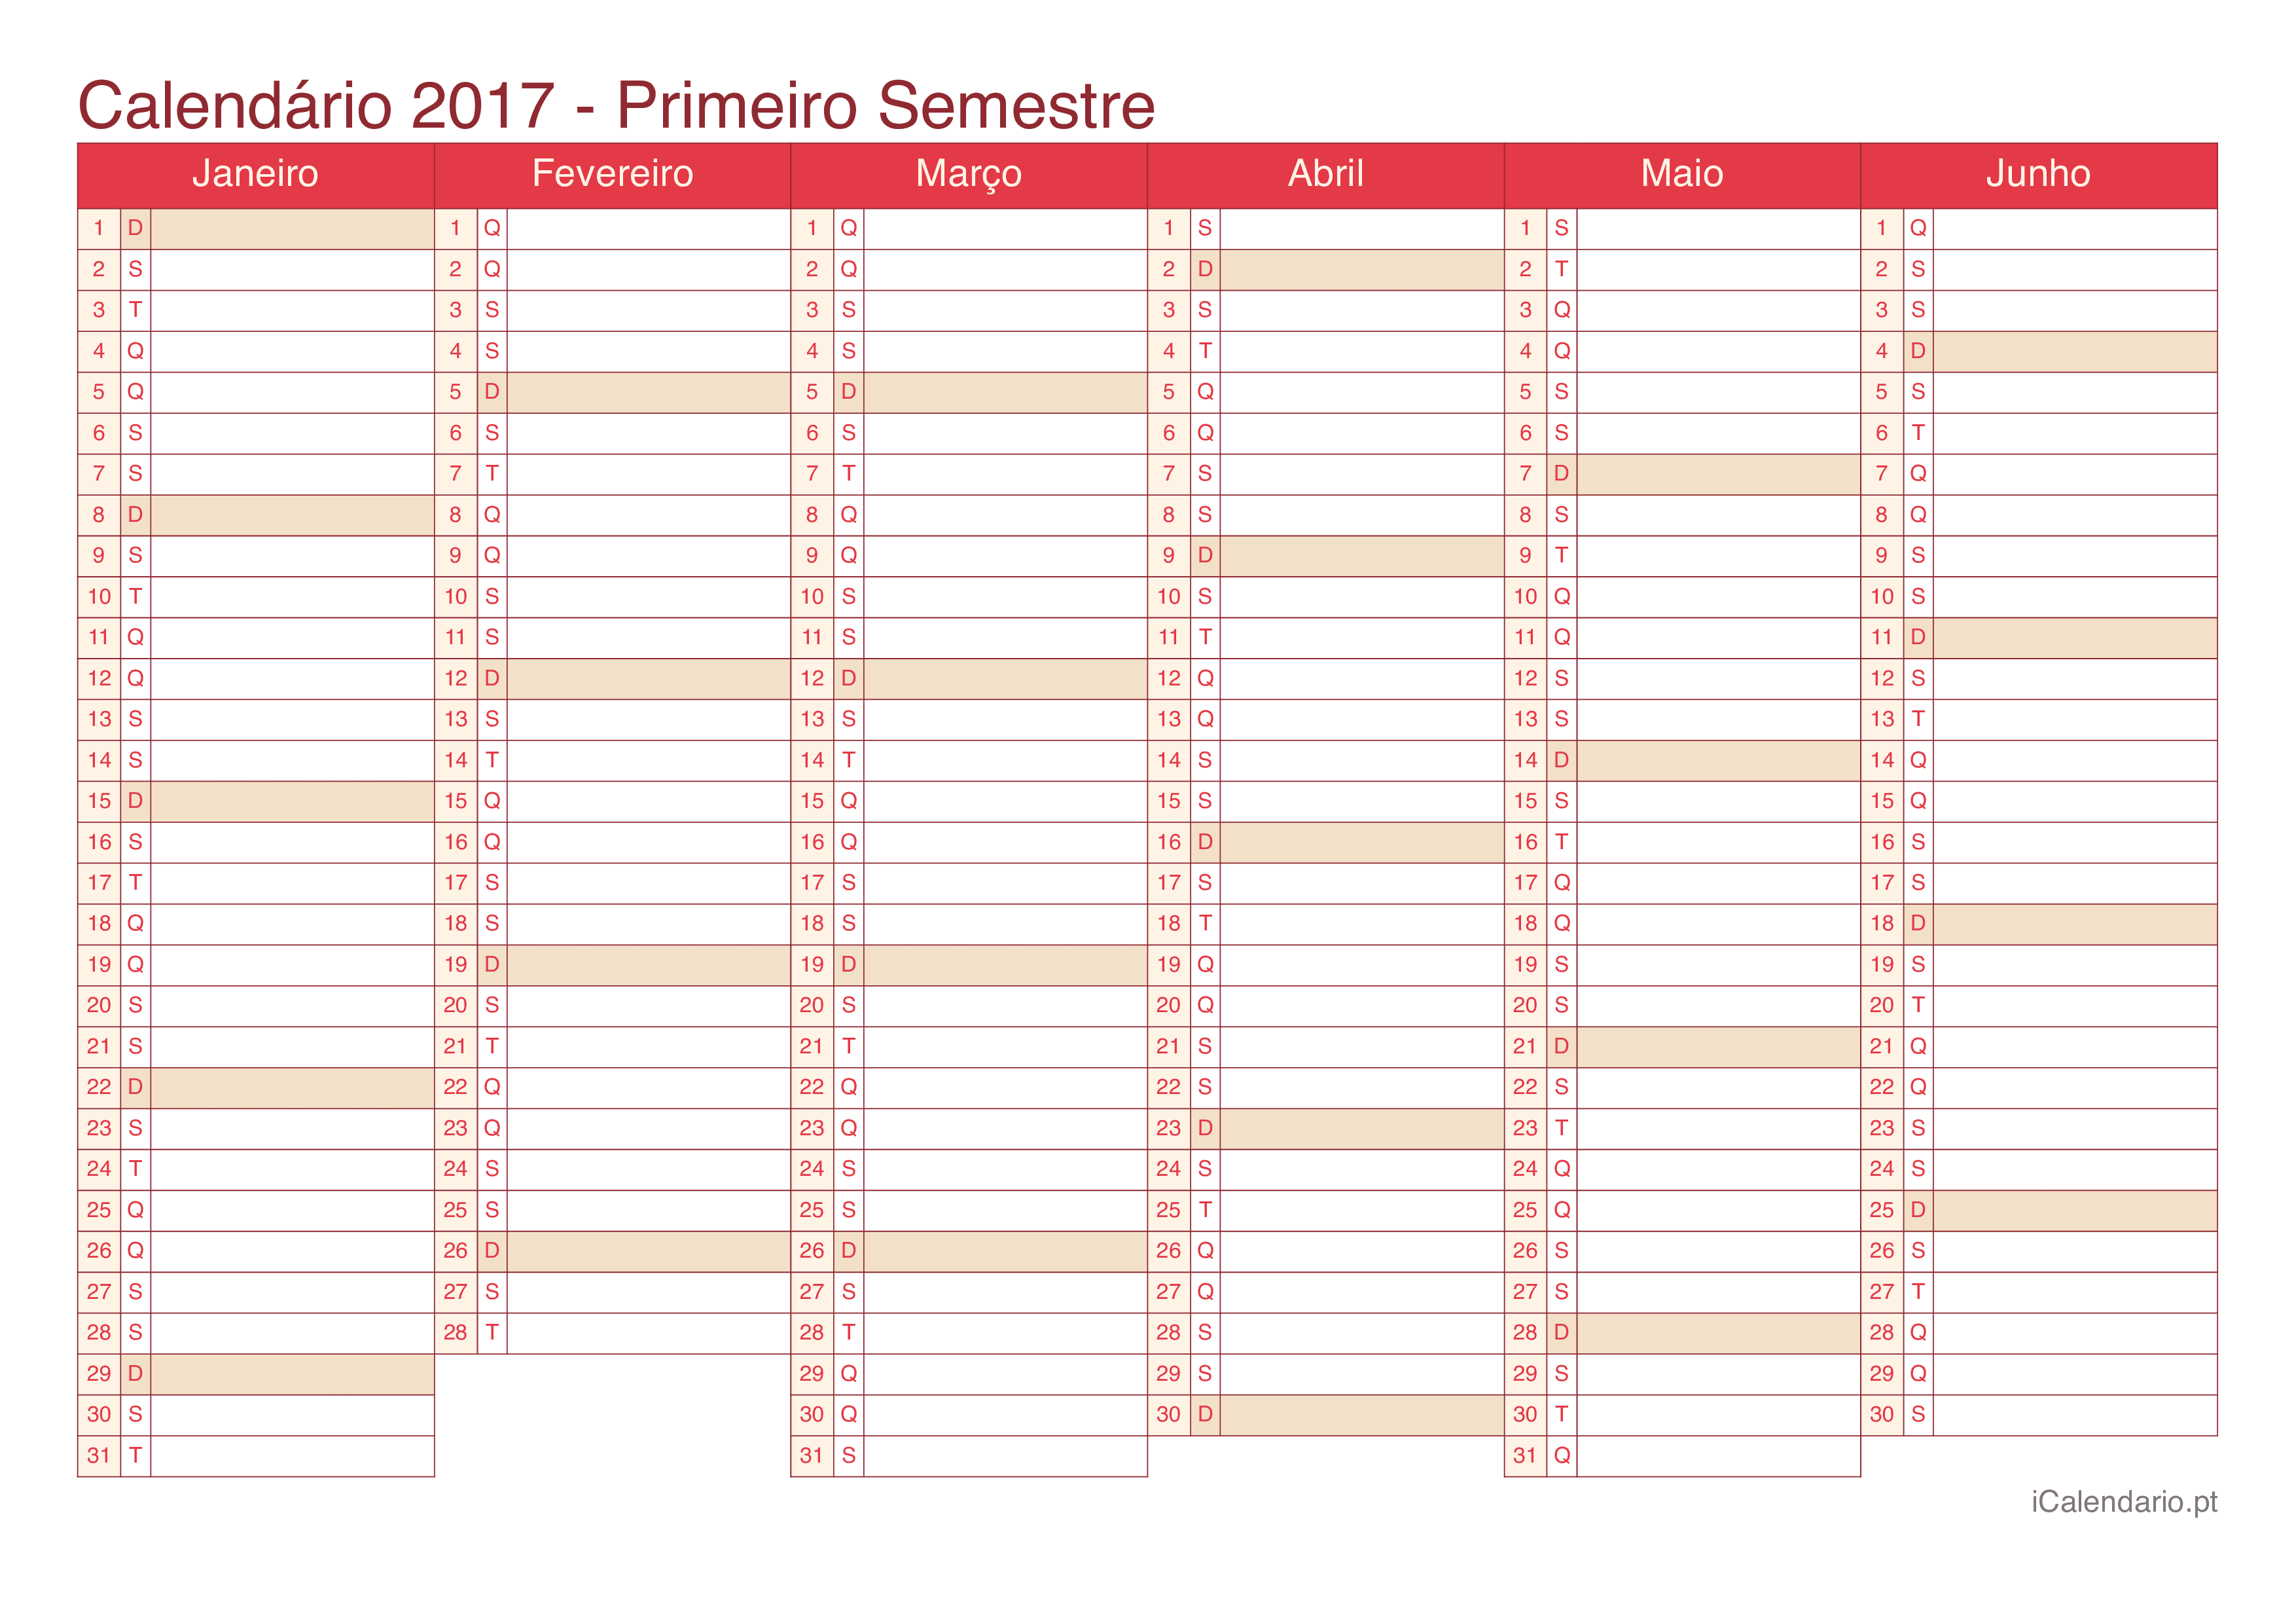 Calendário por semestre 2017 - Cherry